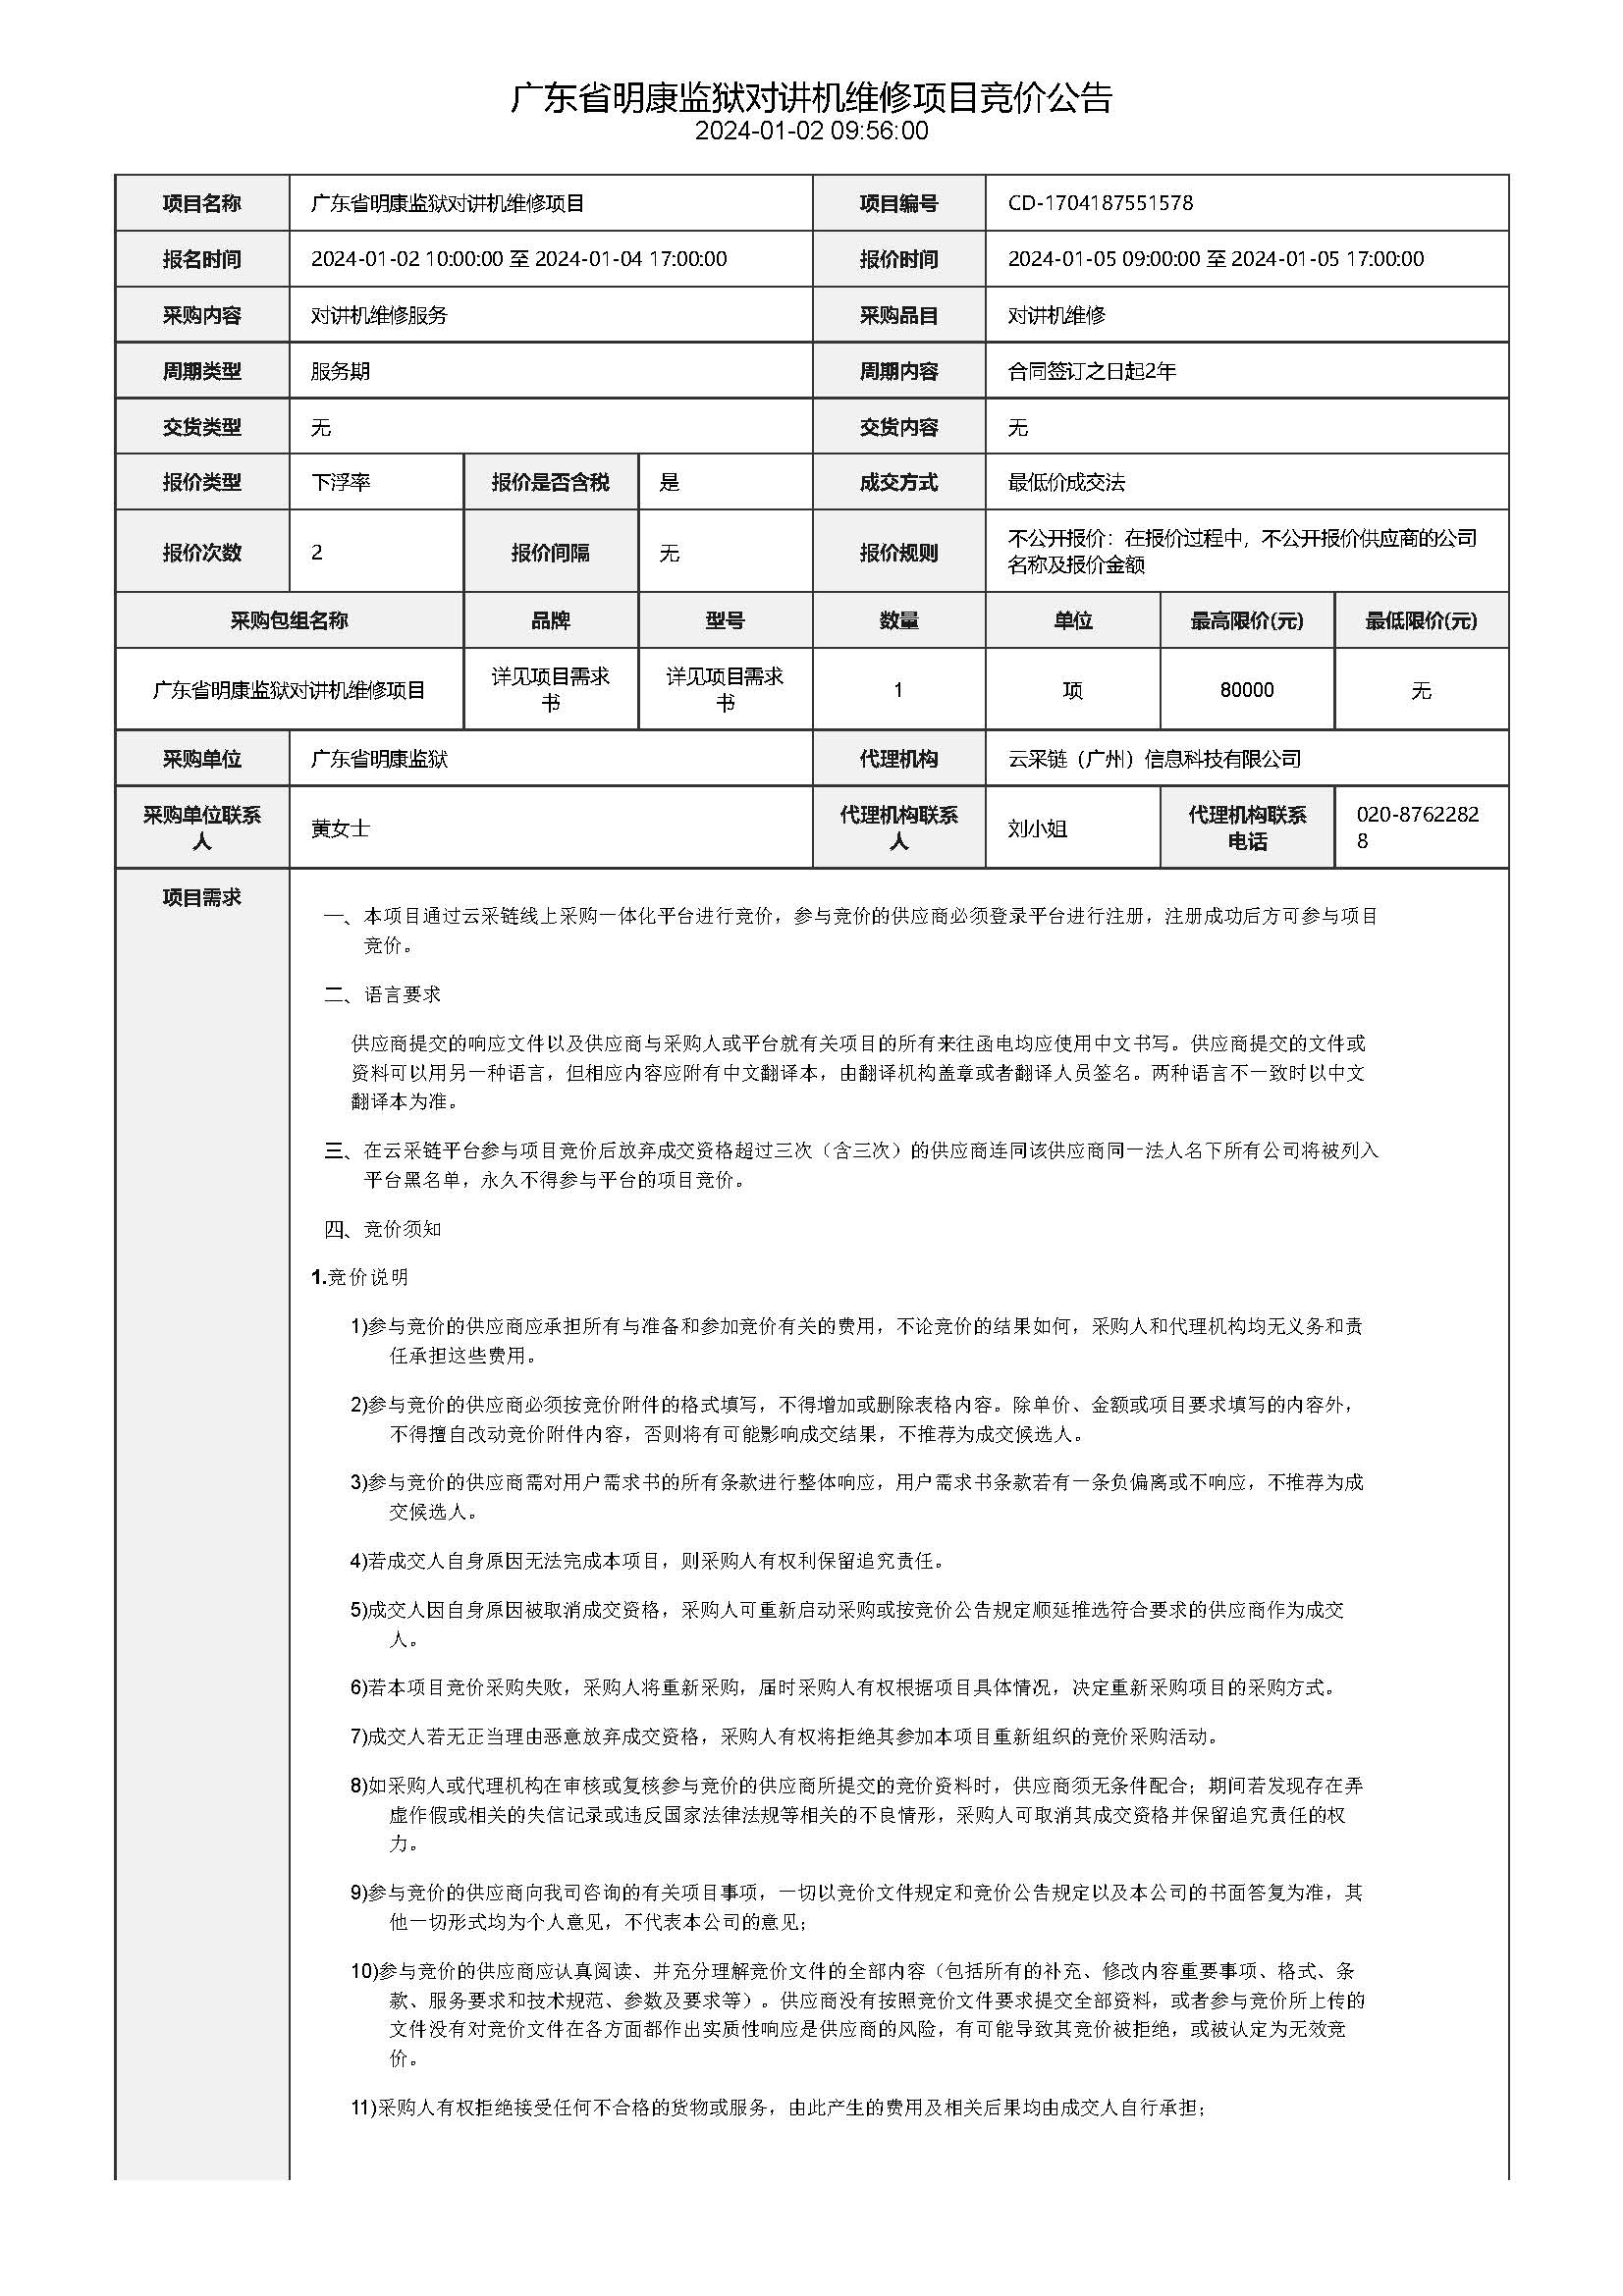 1.2广东省明康监狱对讲机维修项目竞价公告_页面_1.jpg